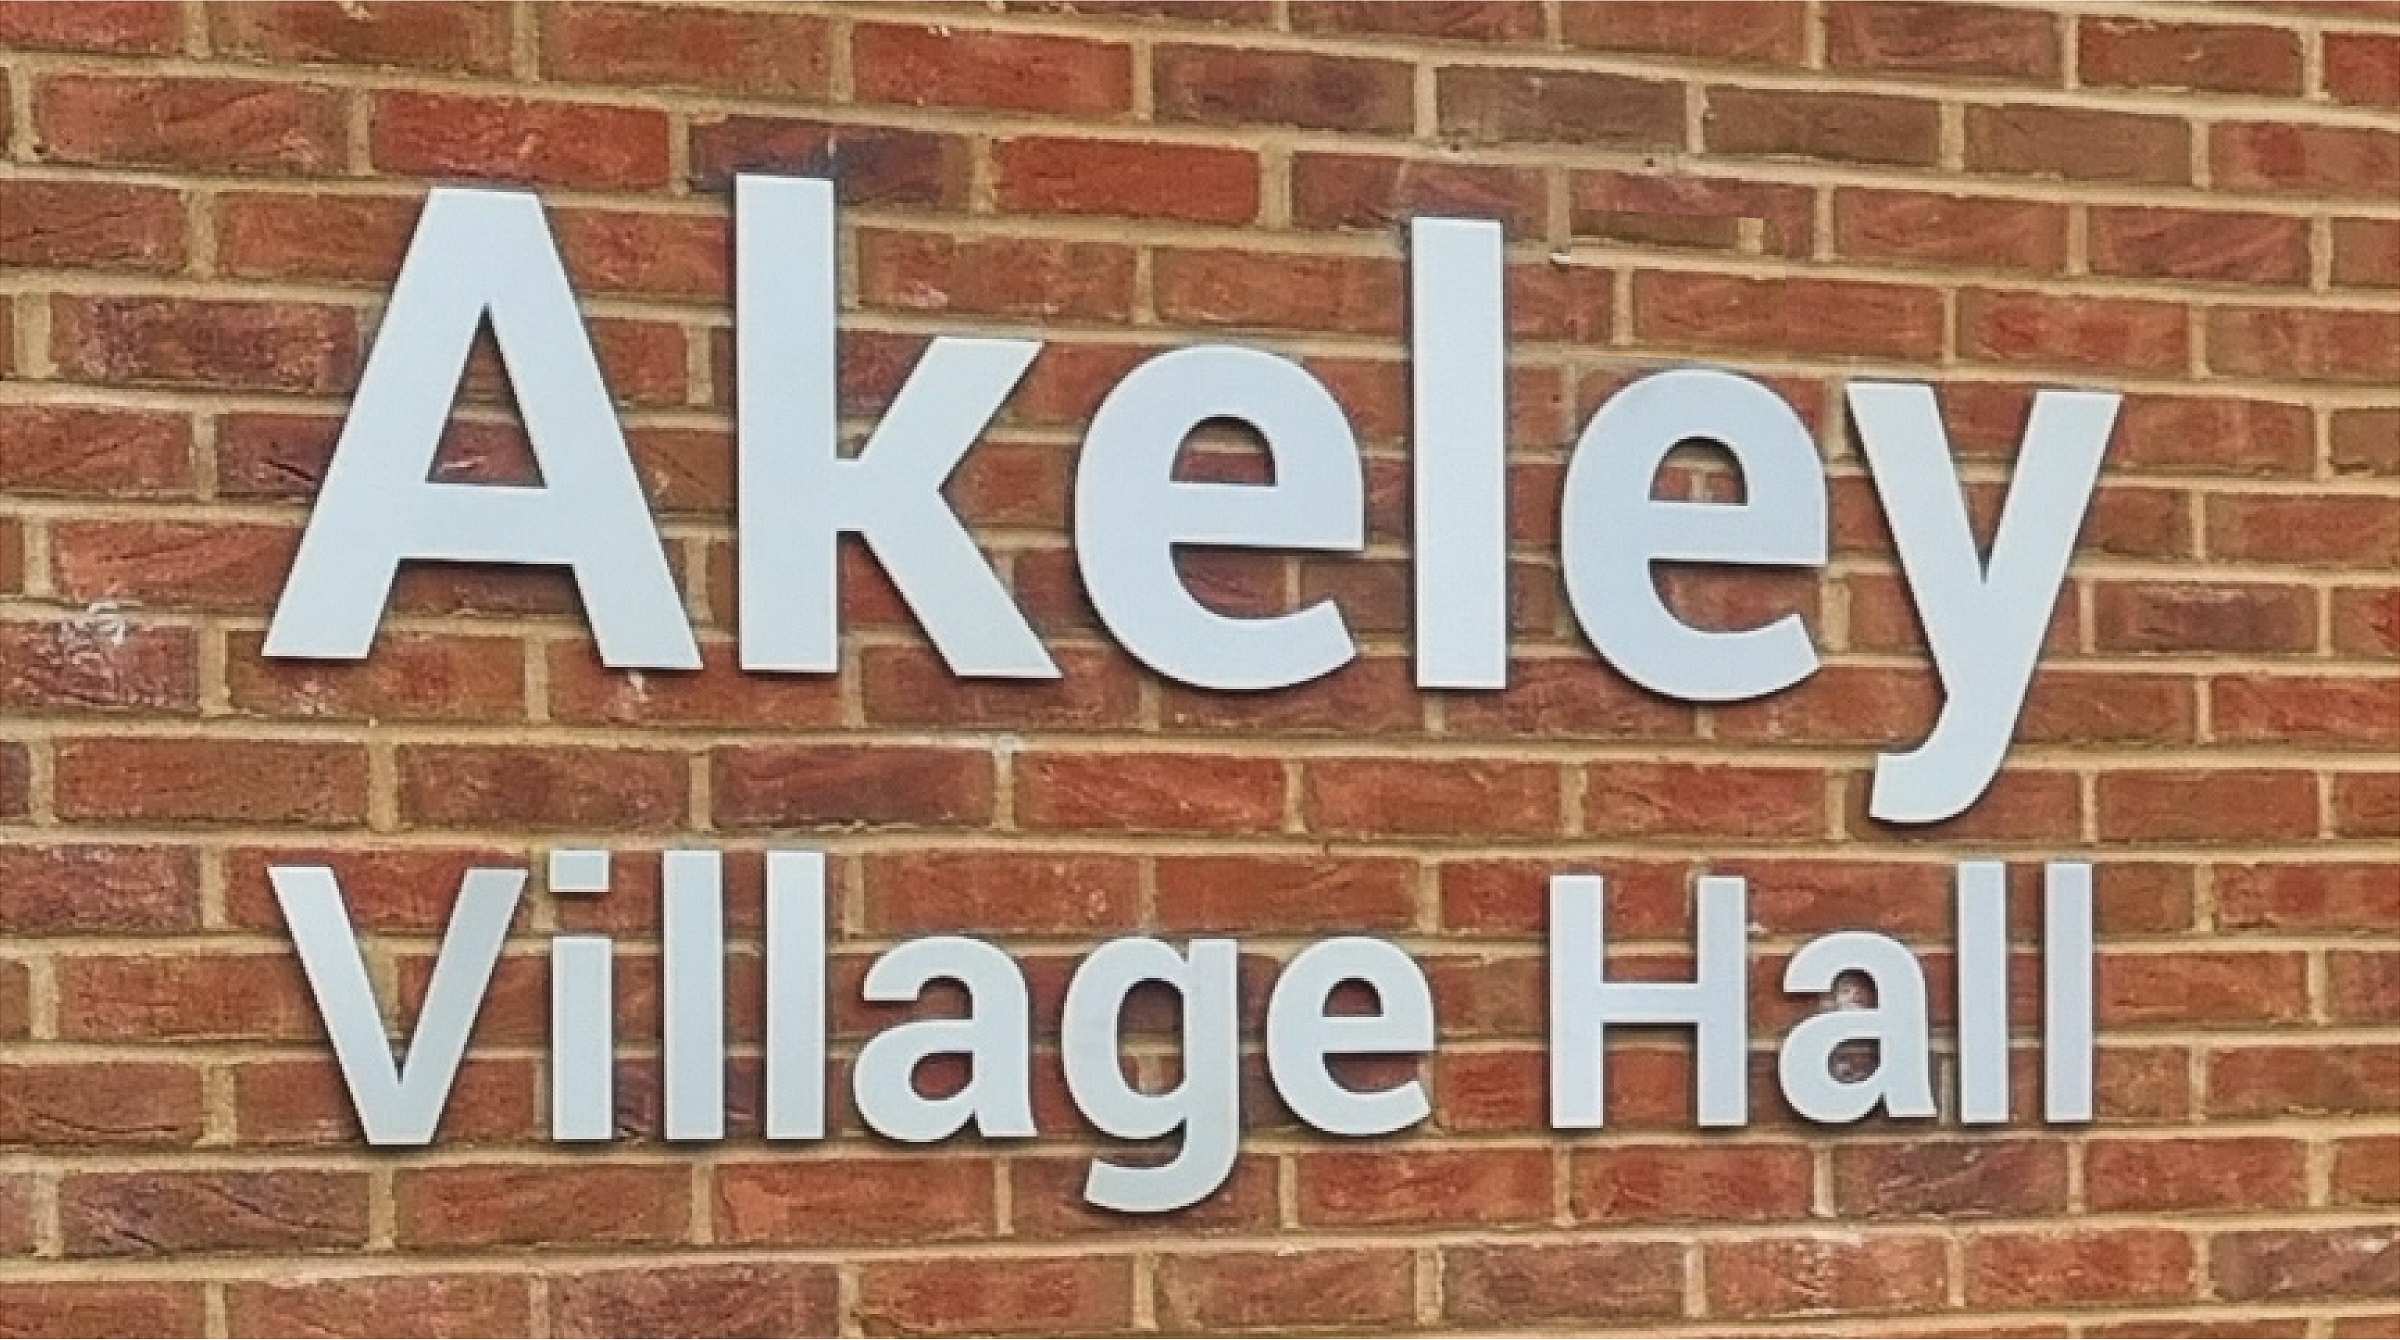 Akeley Village hall